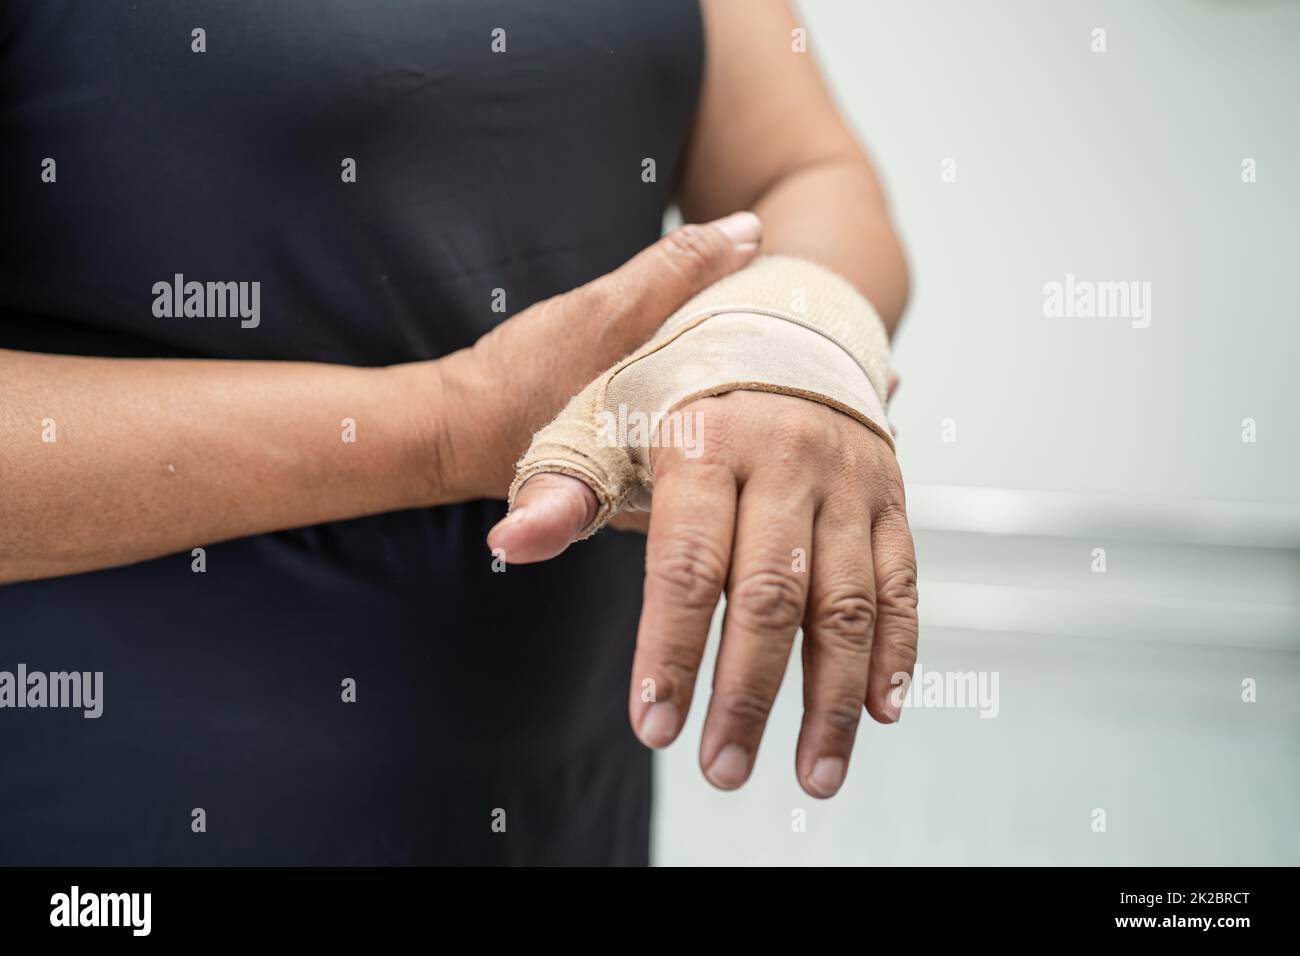 https://c8.alamy.com/compde/2k2brct/asiatische-frauen-mittleren-alters-verwenden-elastischen-verband-zur-behandlung-des-de-quervain-syndroms-an-hand-und-finger-im-buro-2k2brct.jpg